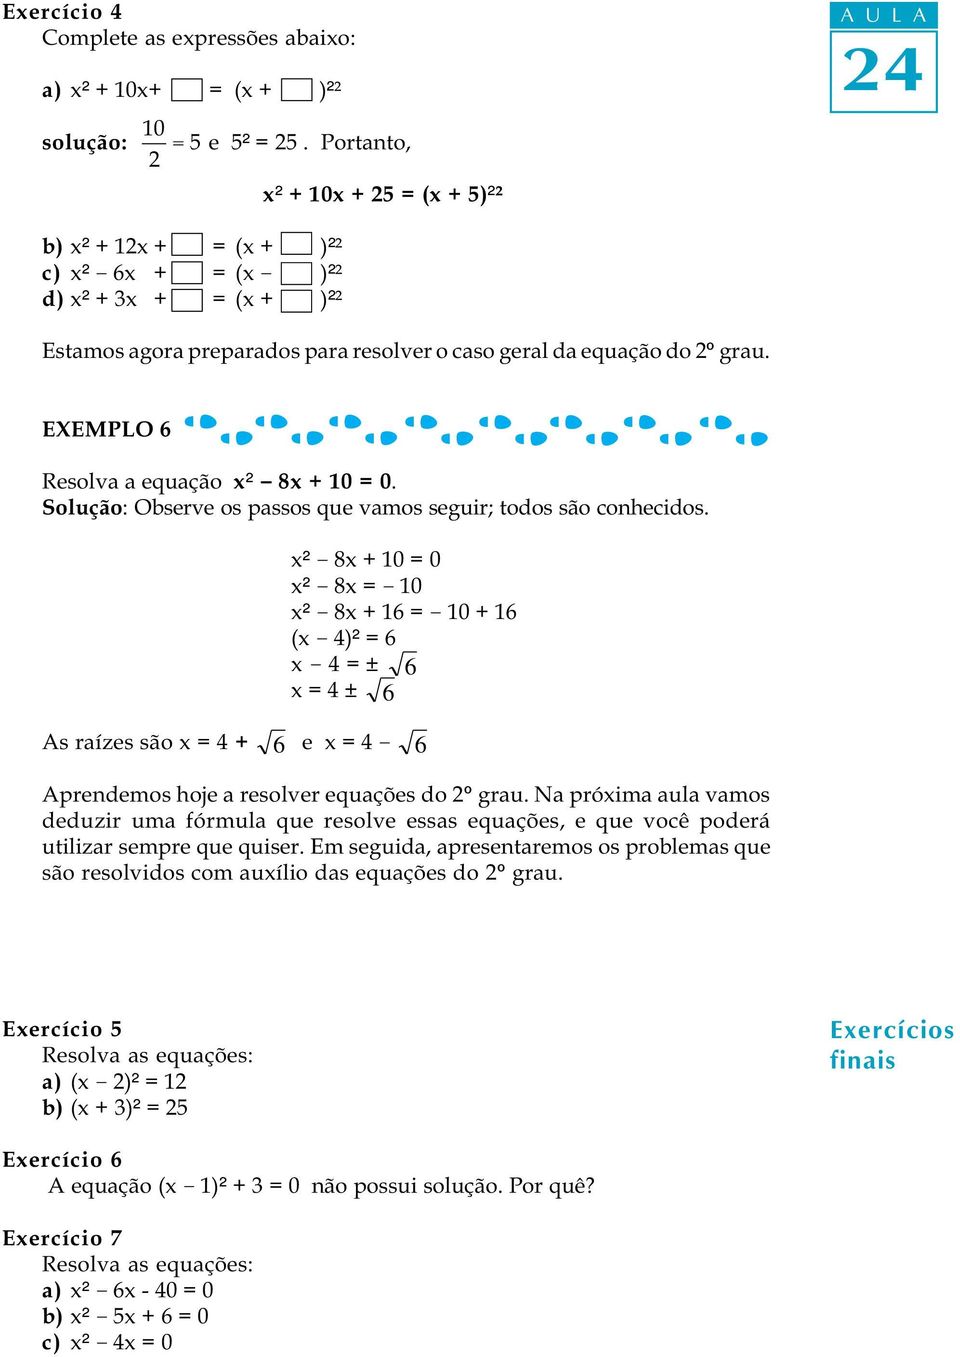 EXEMPLO 6 Resolva a equação x² - 8x + 10 = 0. Solução: Observe os passos que vamos seguir; todos são conhecidos.